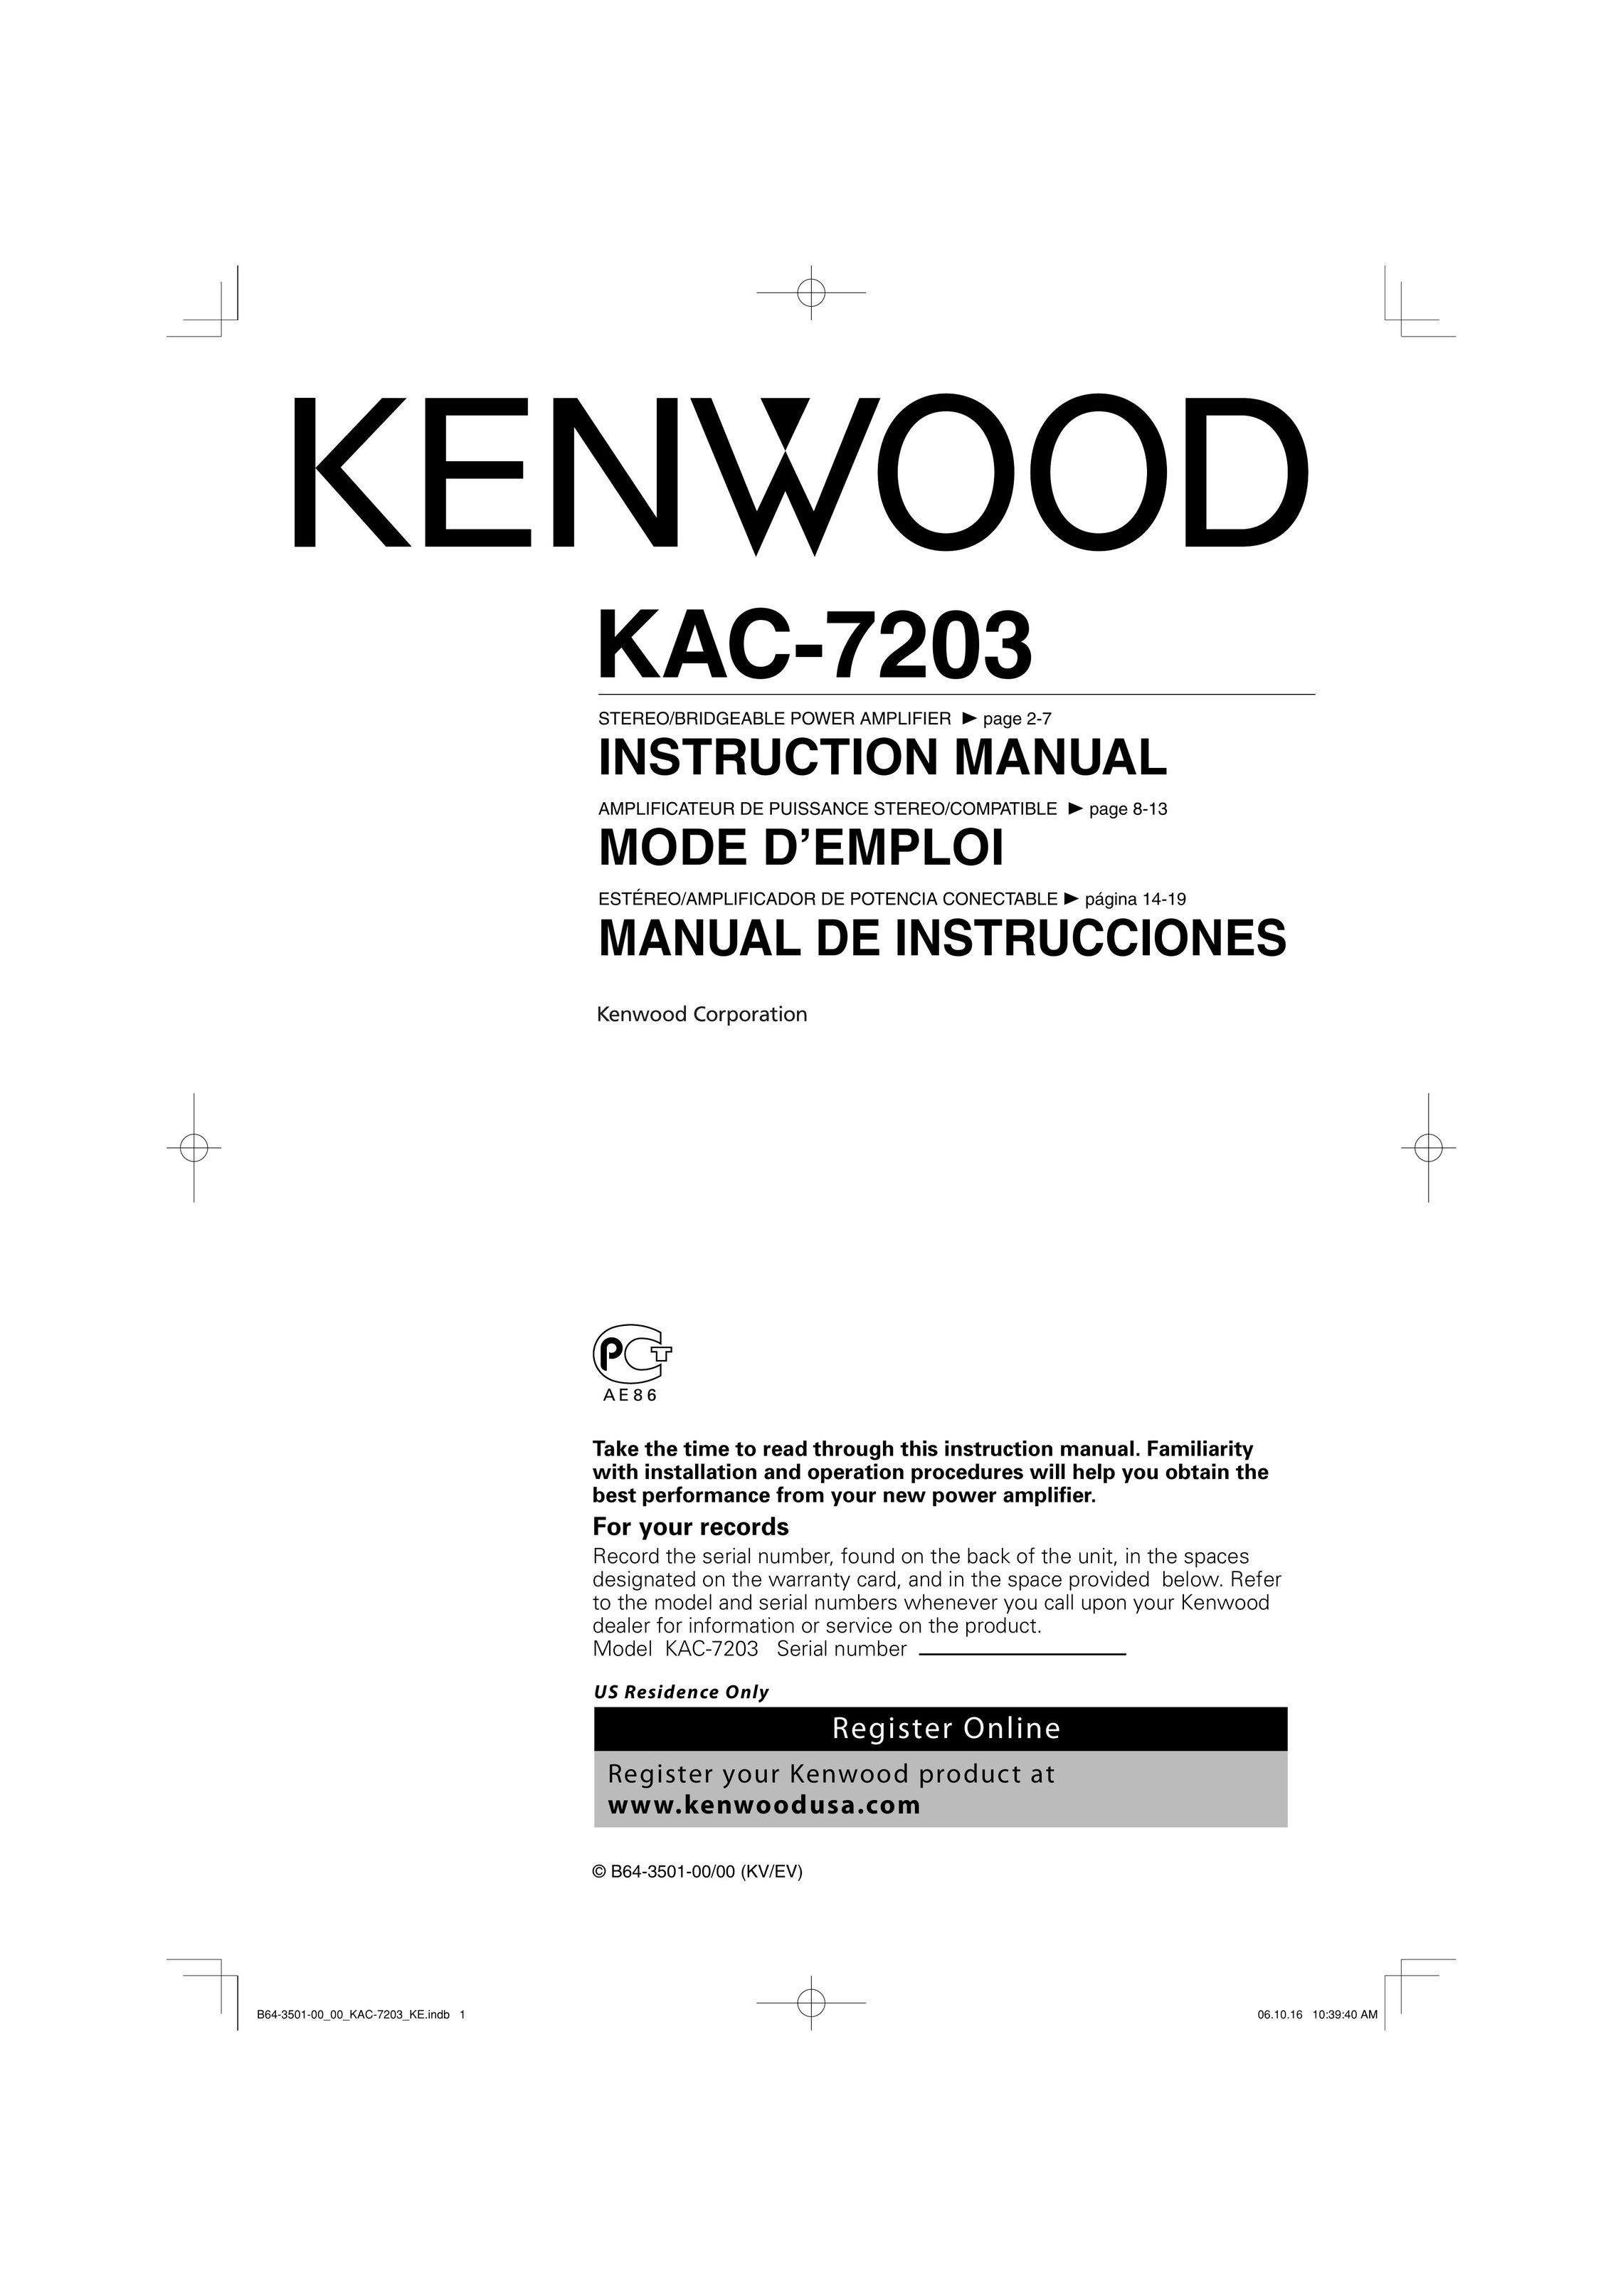 Kenwood KAC-7203 Stereo Amplifier User Manual